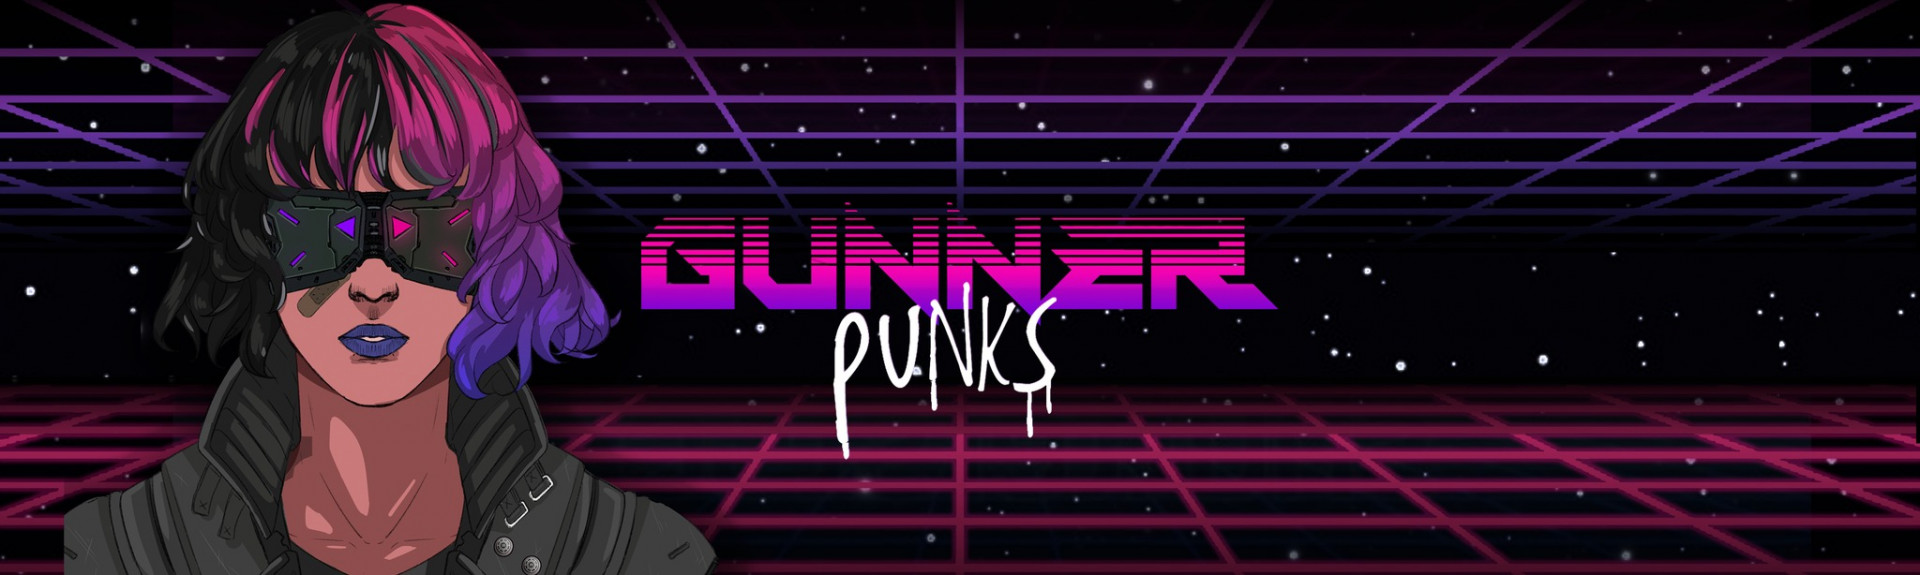 Gunner Punks